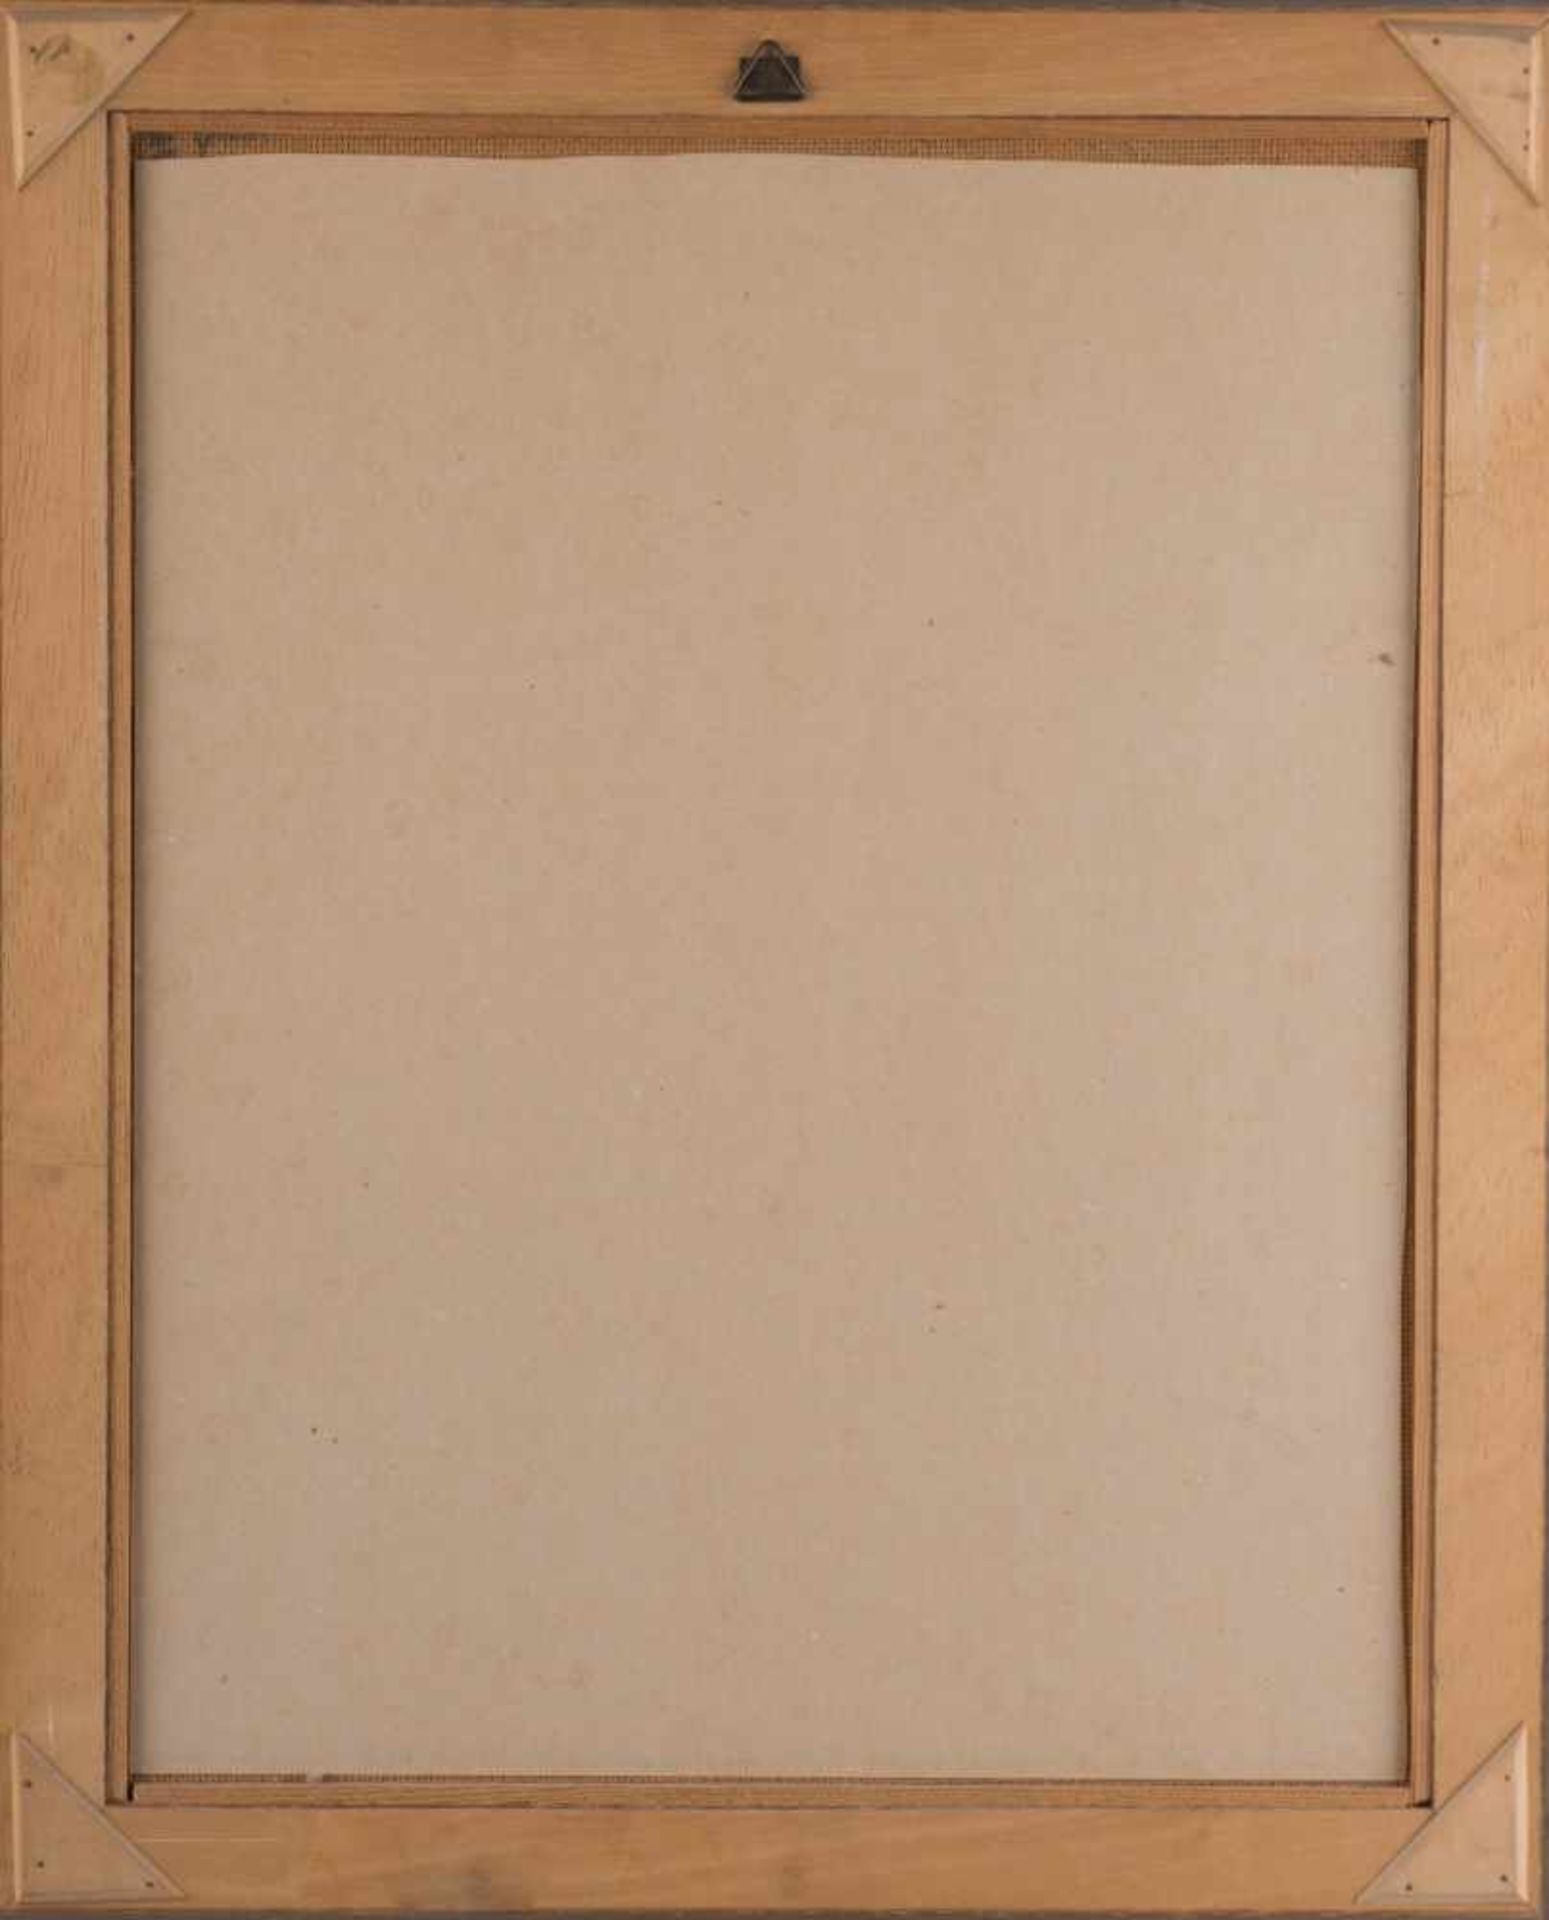 Walter WICHMANN (1916-1970) "Herrenportrait" Gemälde Öl/ Hartfaser, 44 cm x 34,5 cm, rechts signiert - Bild 7 aus 7